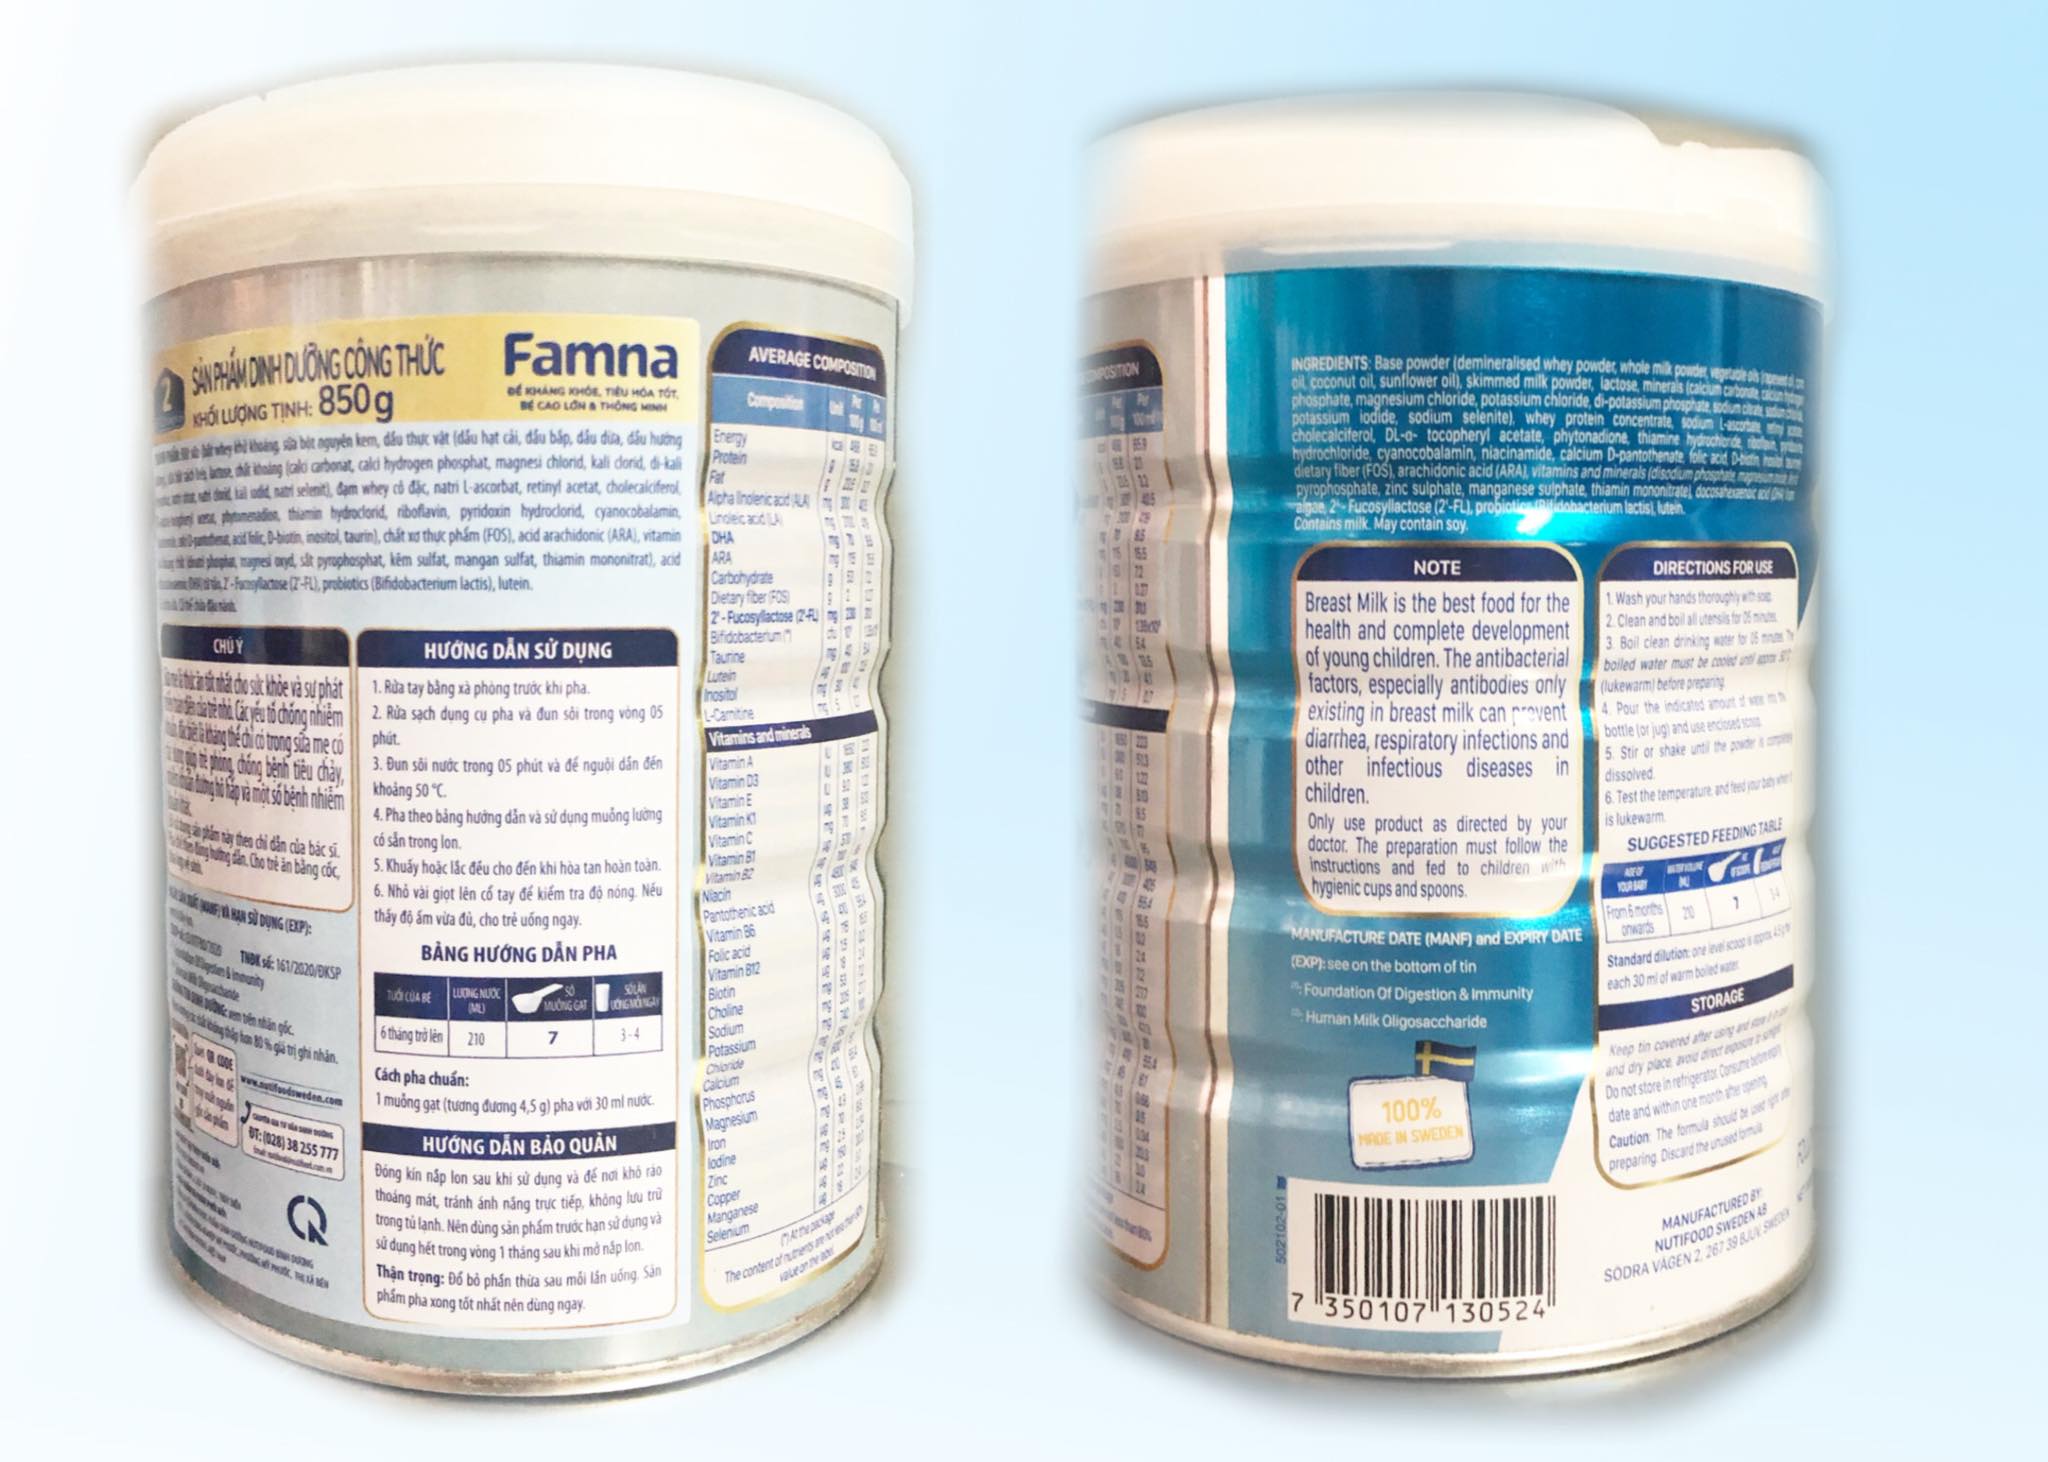 Sữa Famna step 2 - Đề kháng khoẻ, tiêu hoá tốt, bé cao lớn và thông minh - Hàng chính hãng của NutiFood